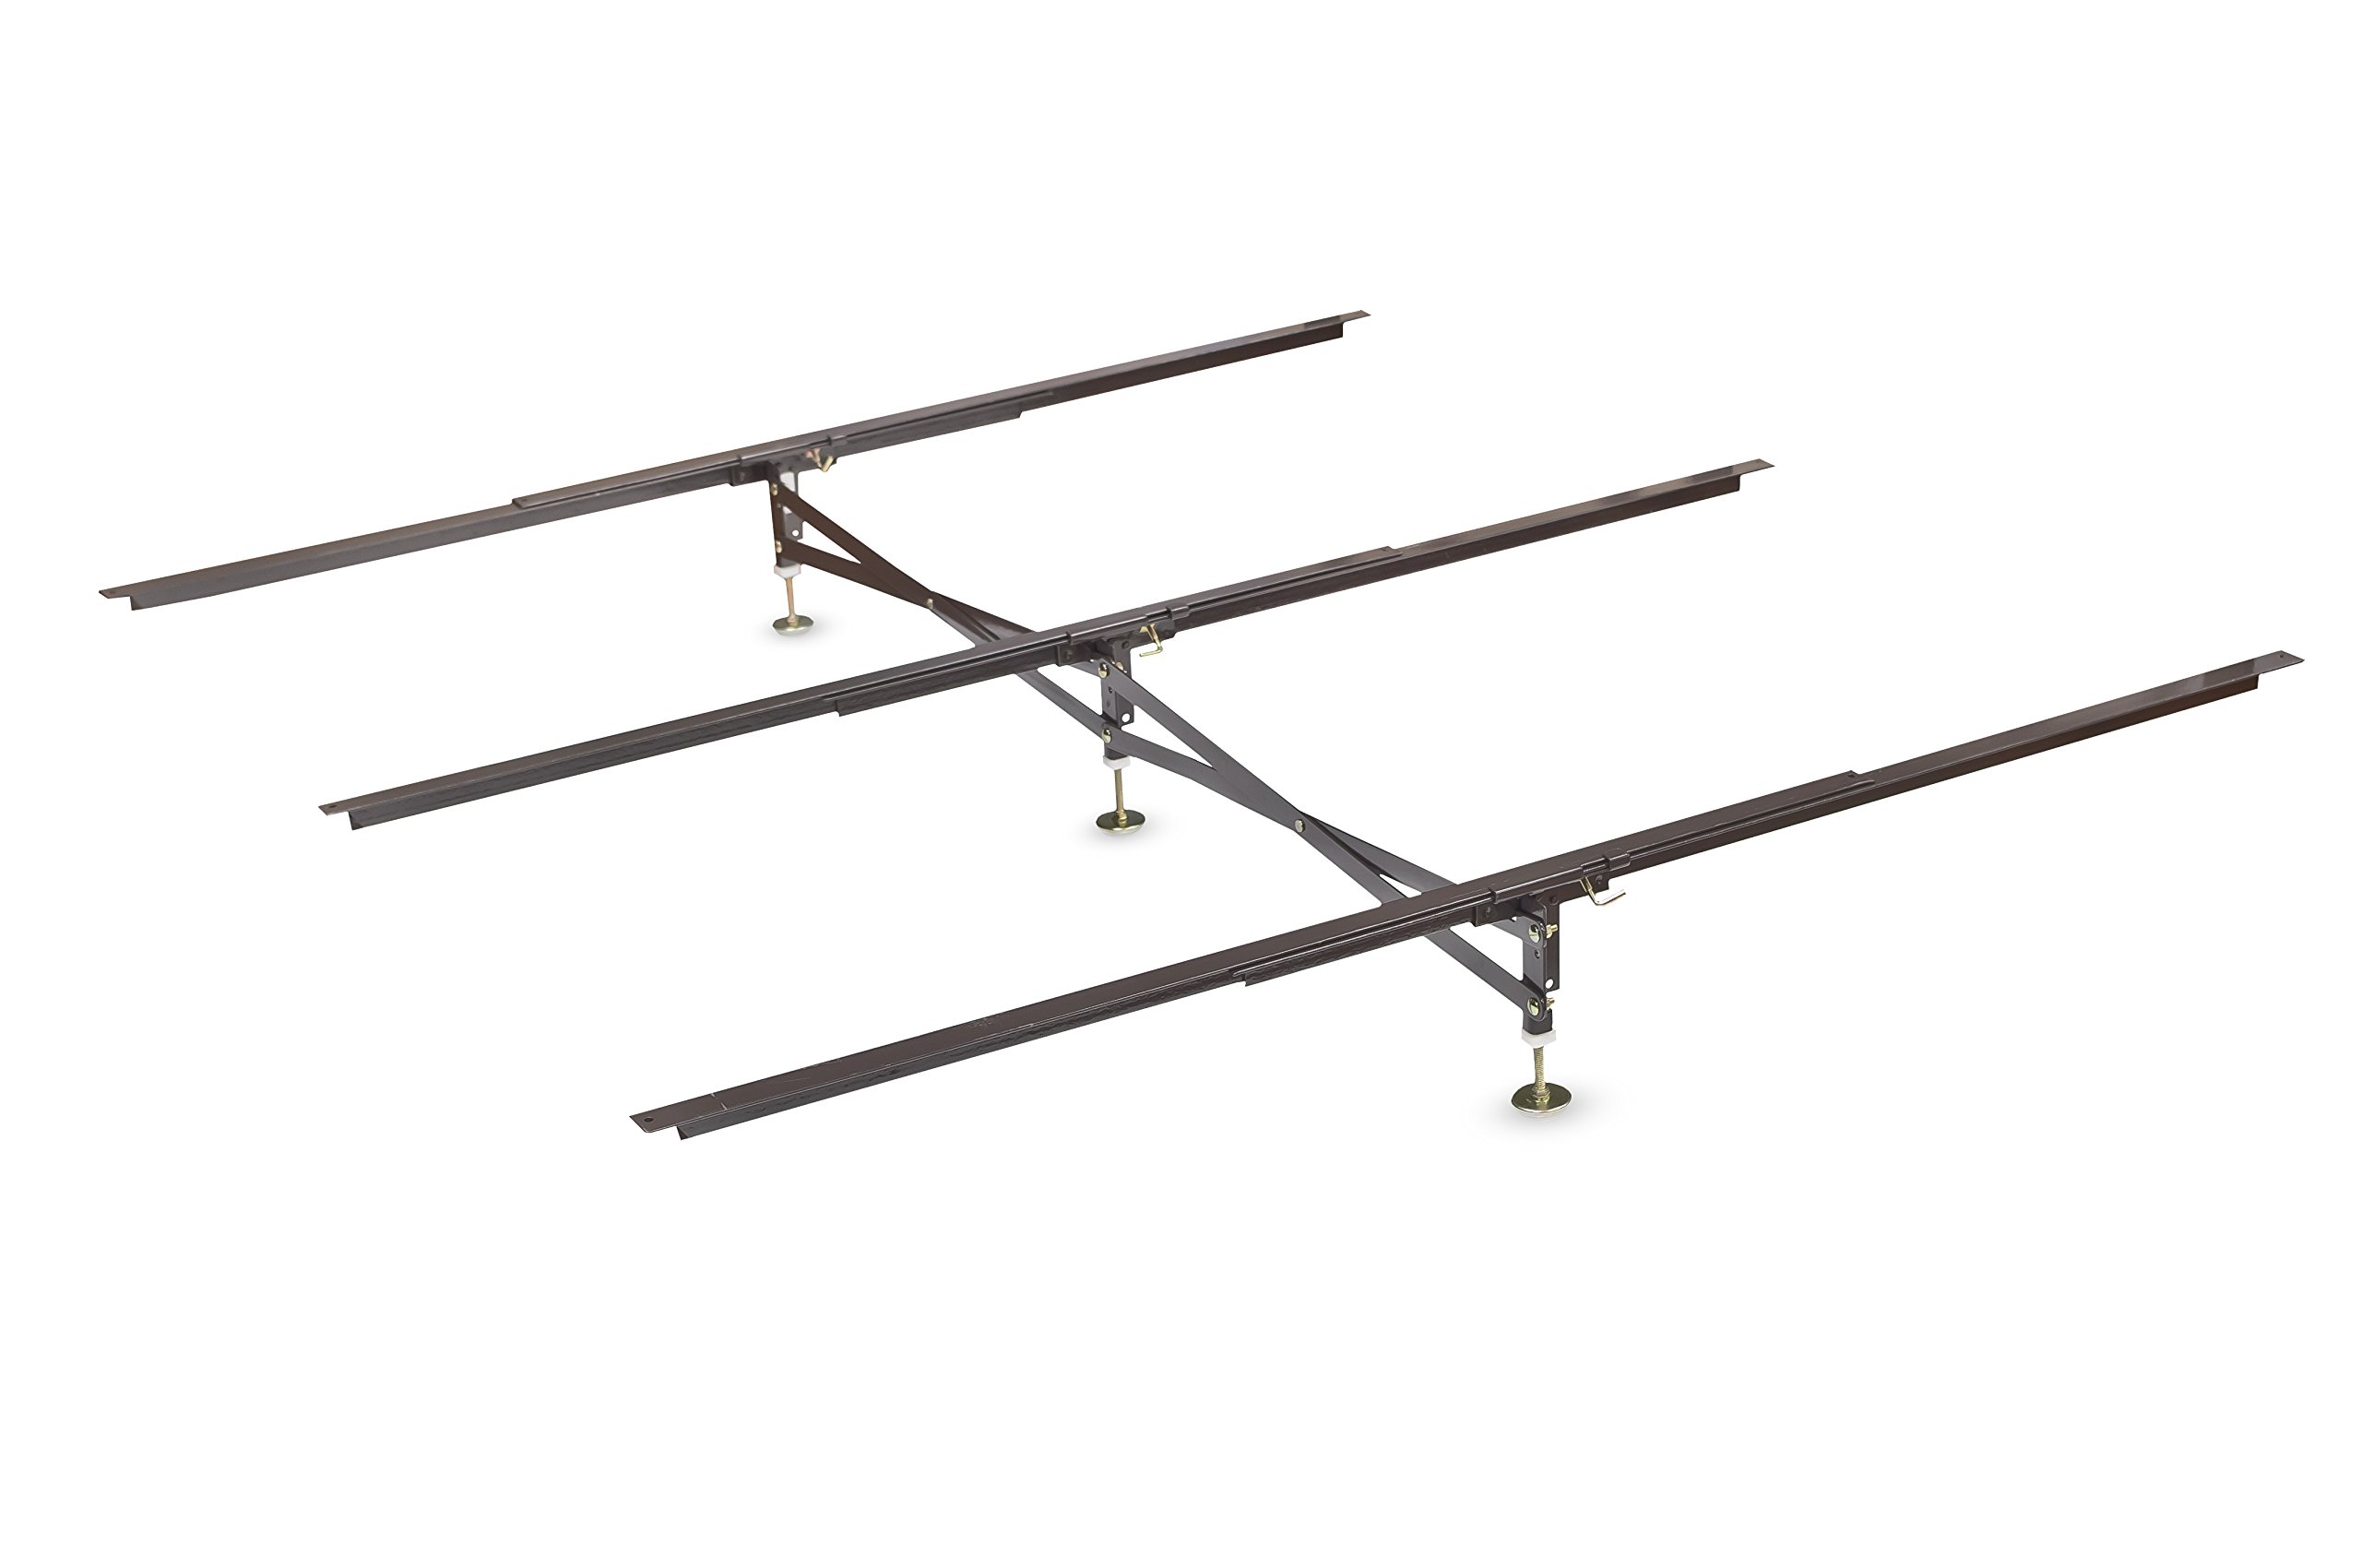 Glideaway X 支撑床架支撑系统，GS-3 XS 型号 - 3 个横轨和 3 个腿 - 适用于全尺寸床垫、大号床垫和特大号床垫、弹簧床和床基础的强大中心支撑底座